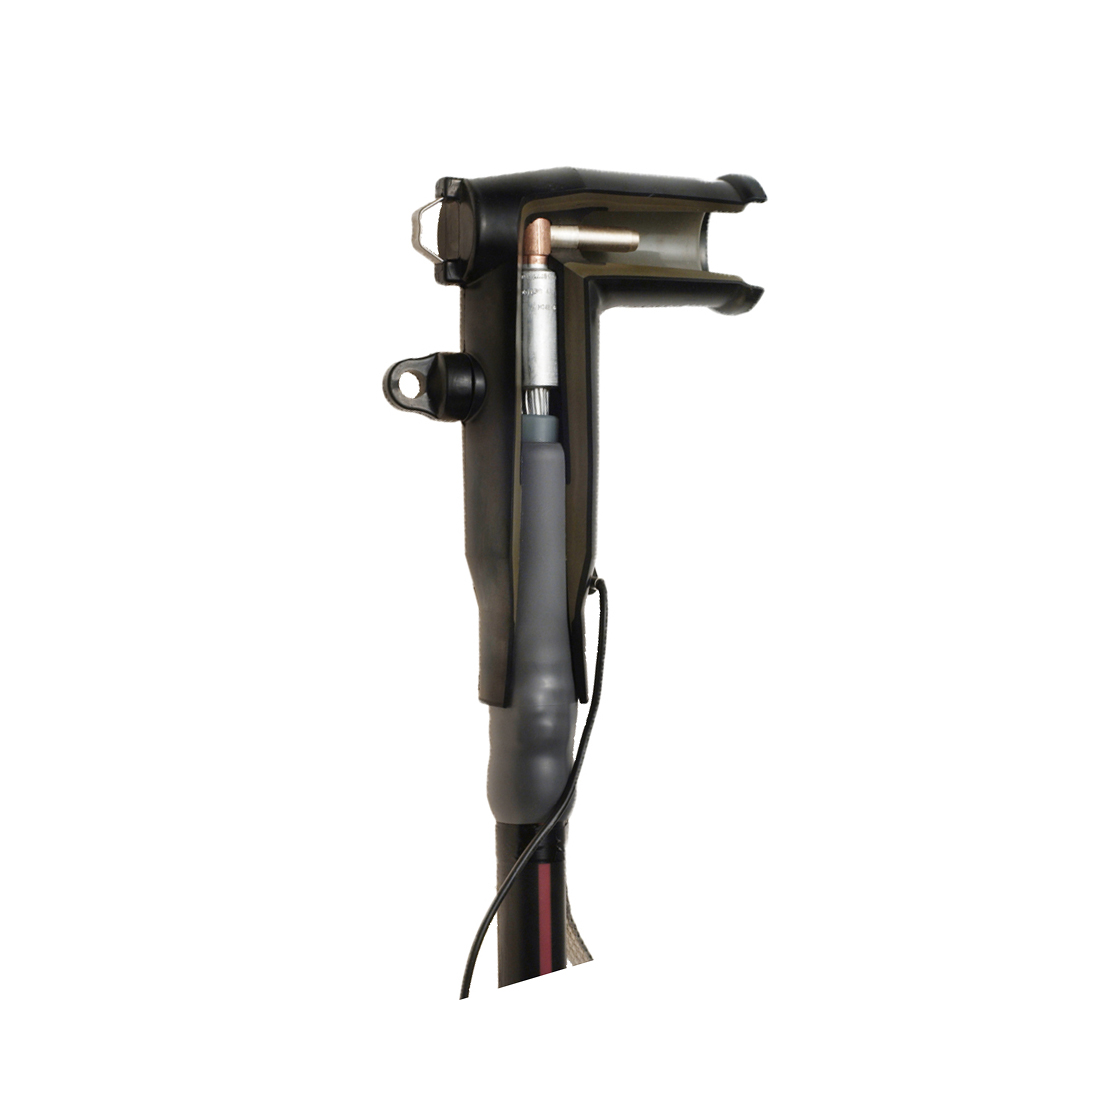 Nexans Euromold 400LR Separable Elbow Connector - E-Tech Components